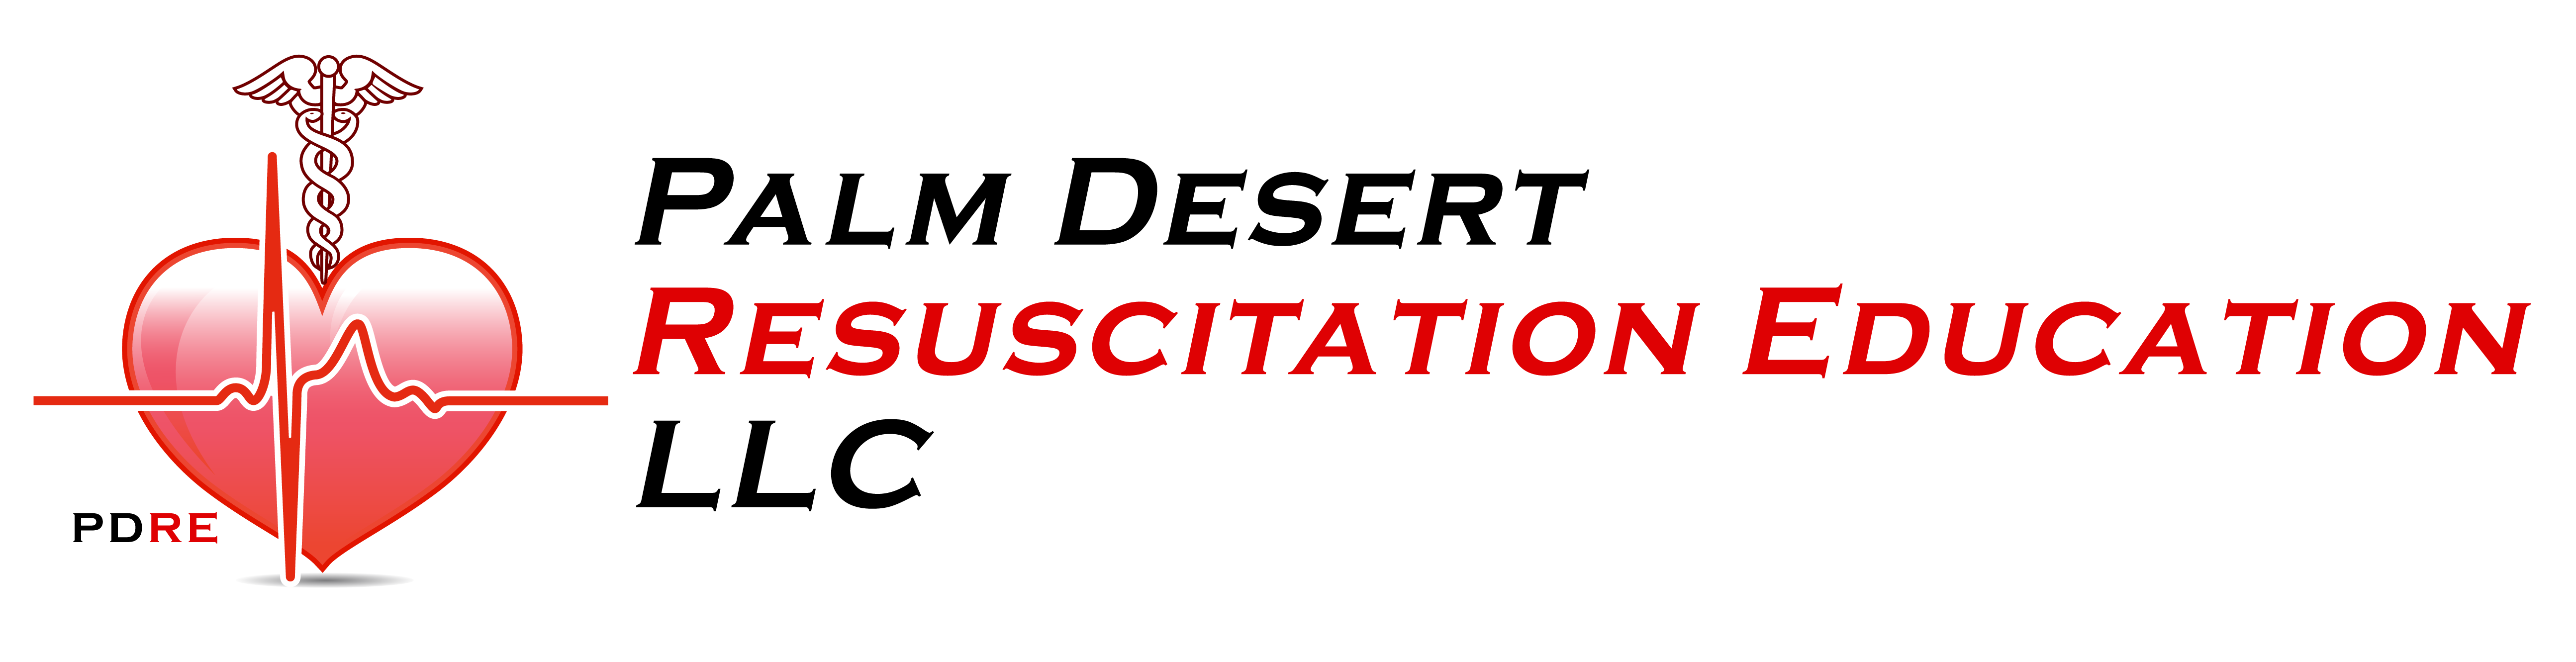 Palm Desert Resuscitation Education LLC (PDRE) Logo